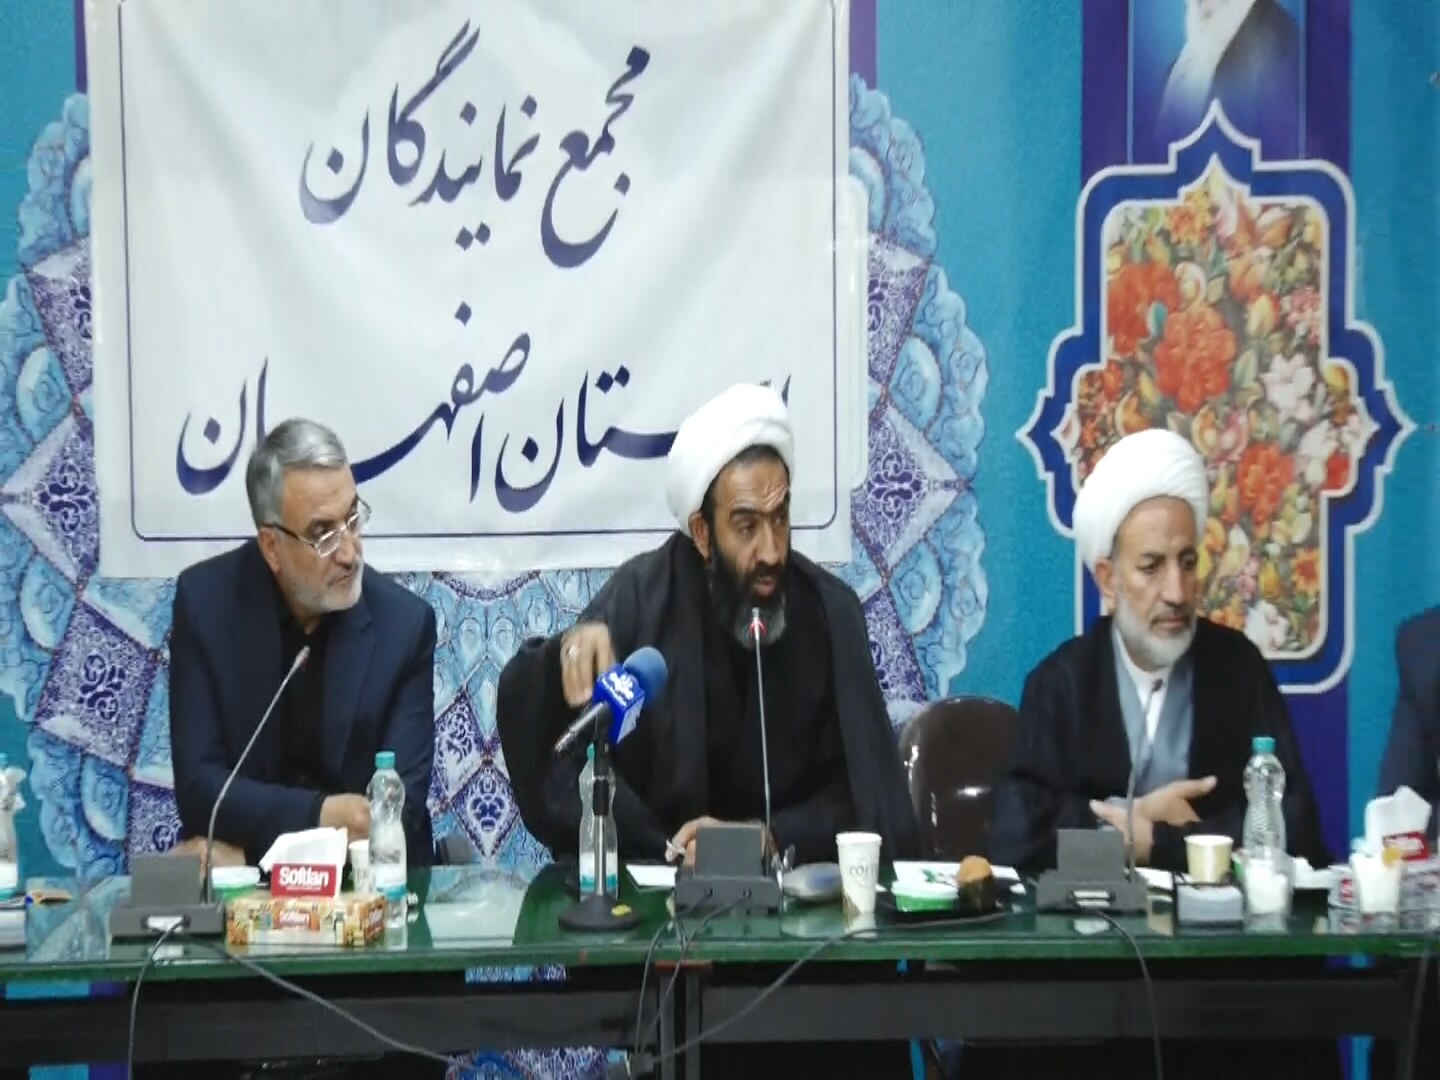 تشکیل کارگروههای تخصصی برای بررسی مسائل و مشکلات استان اصفهان